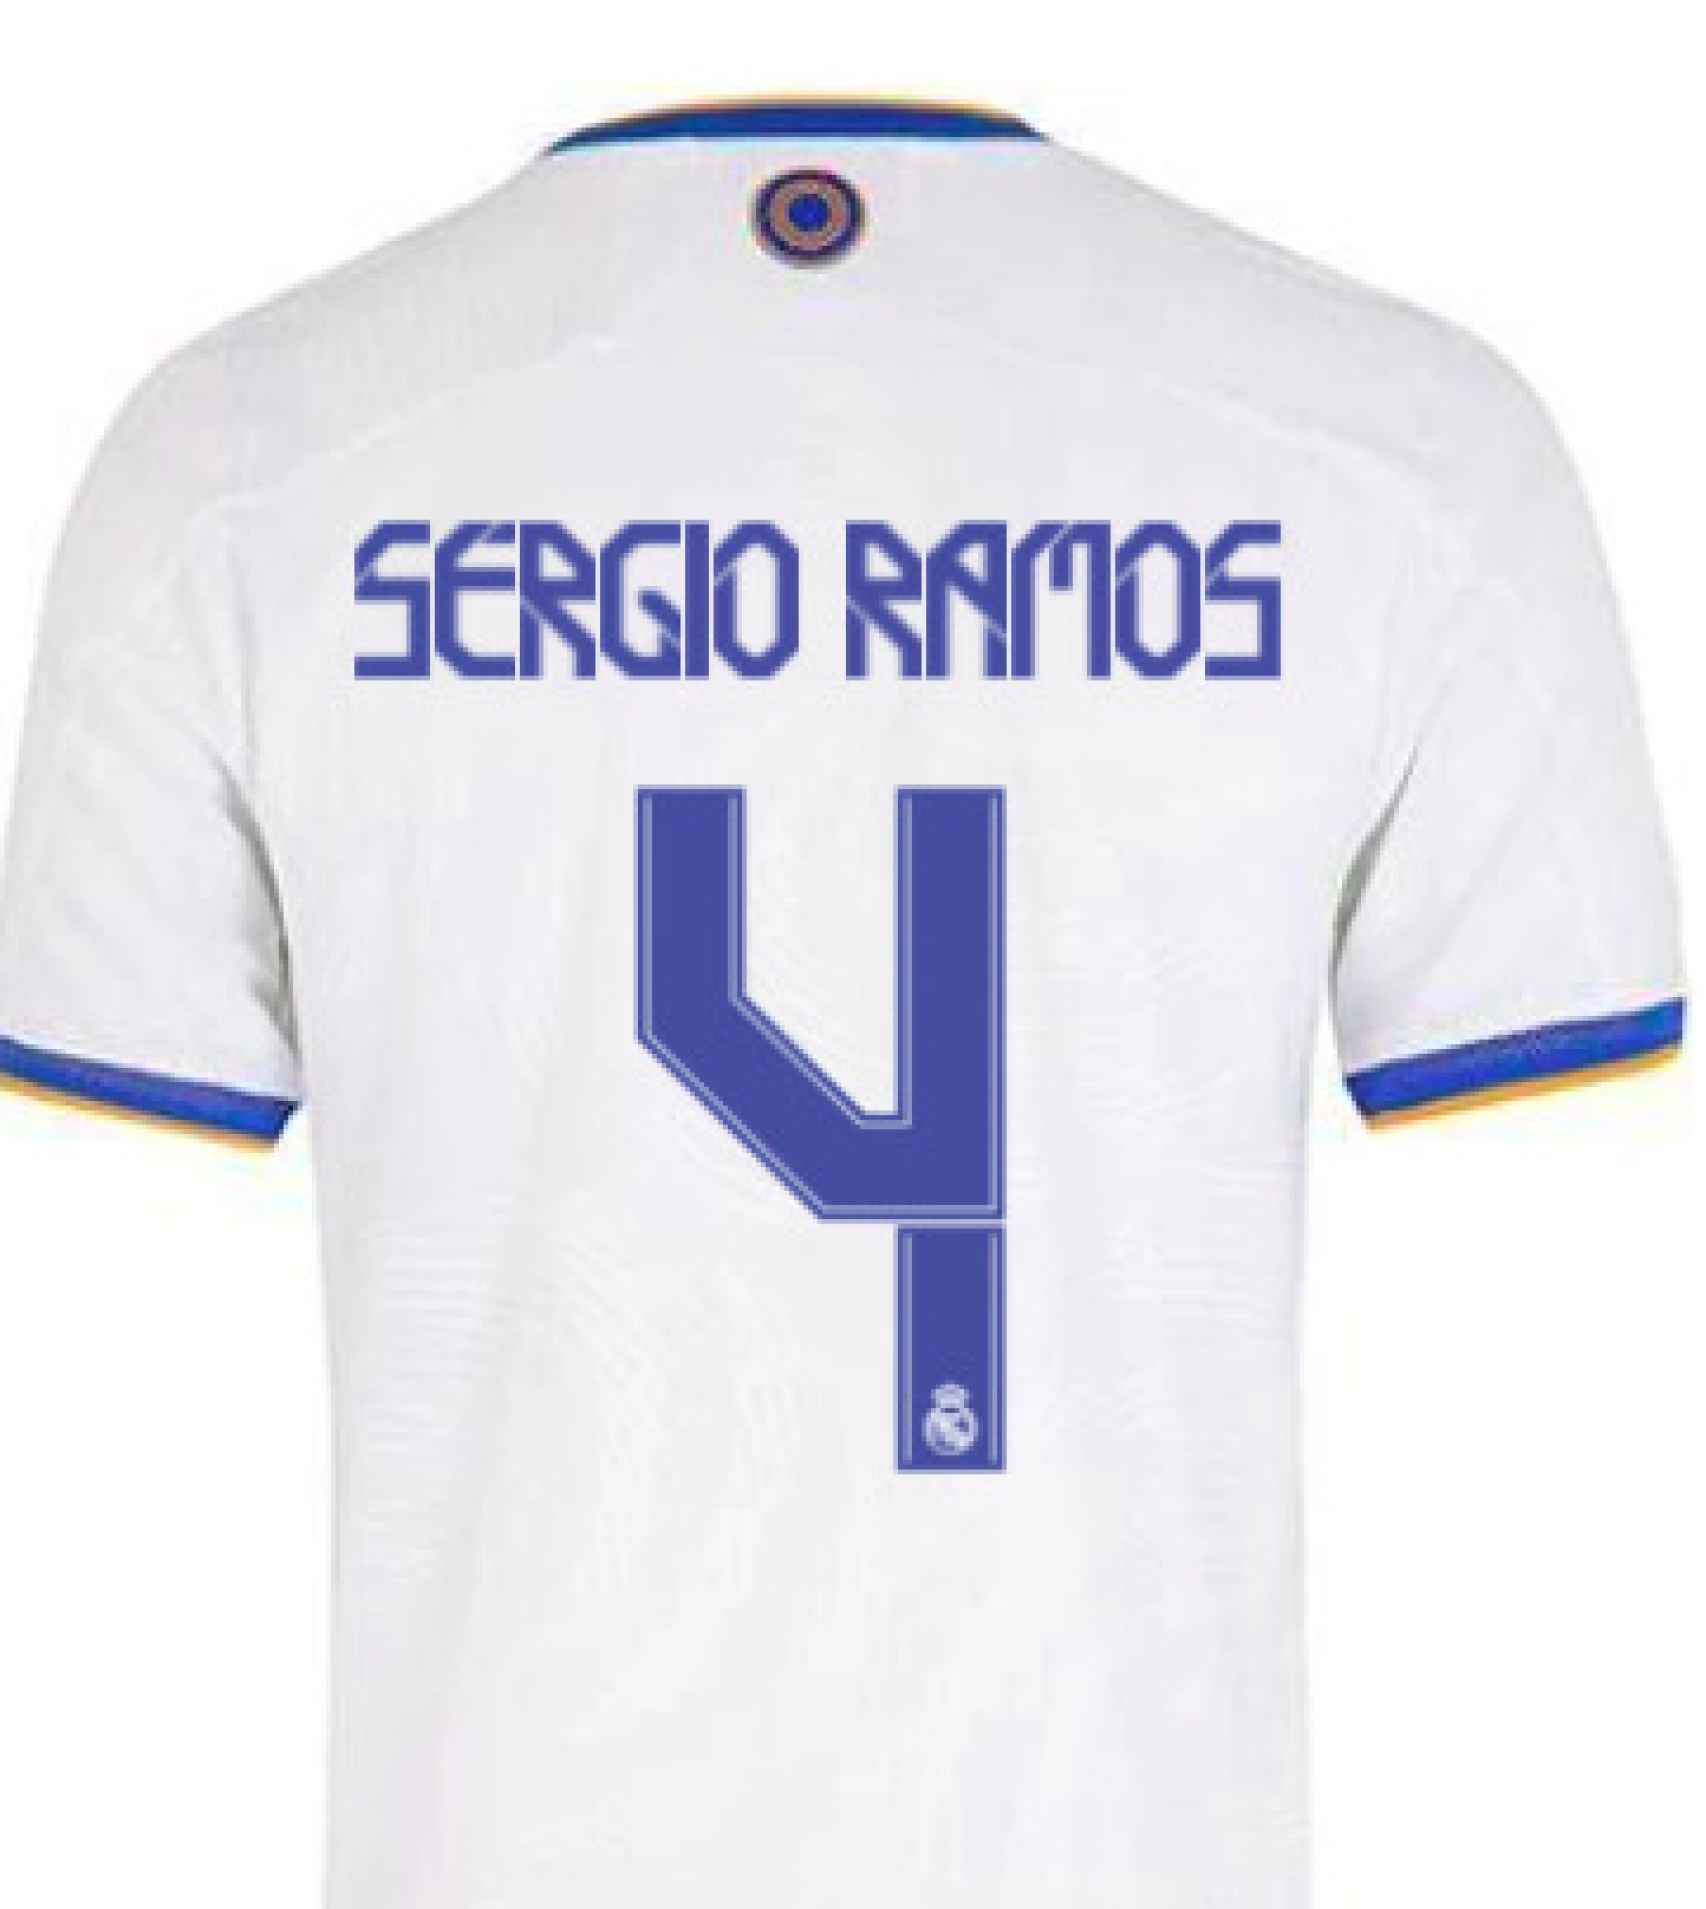 Camiseta de Sergio Ramos para la temporada 2021/2022